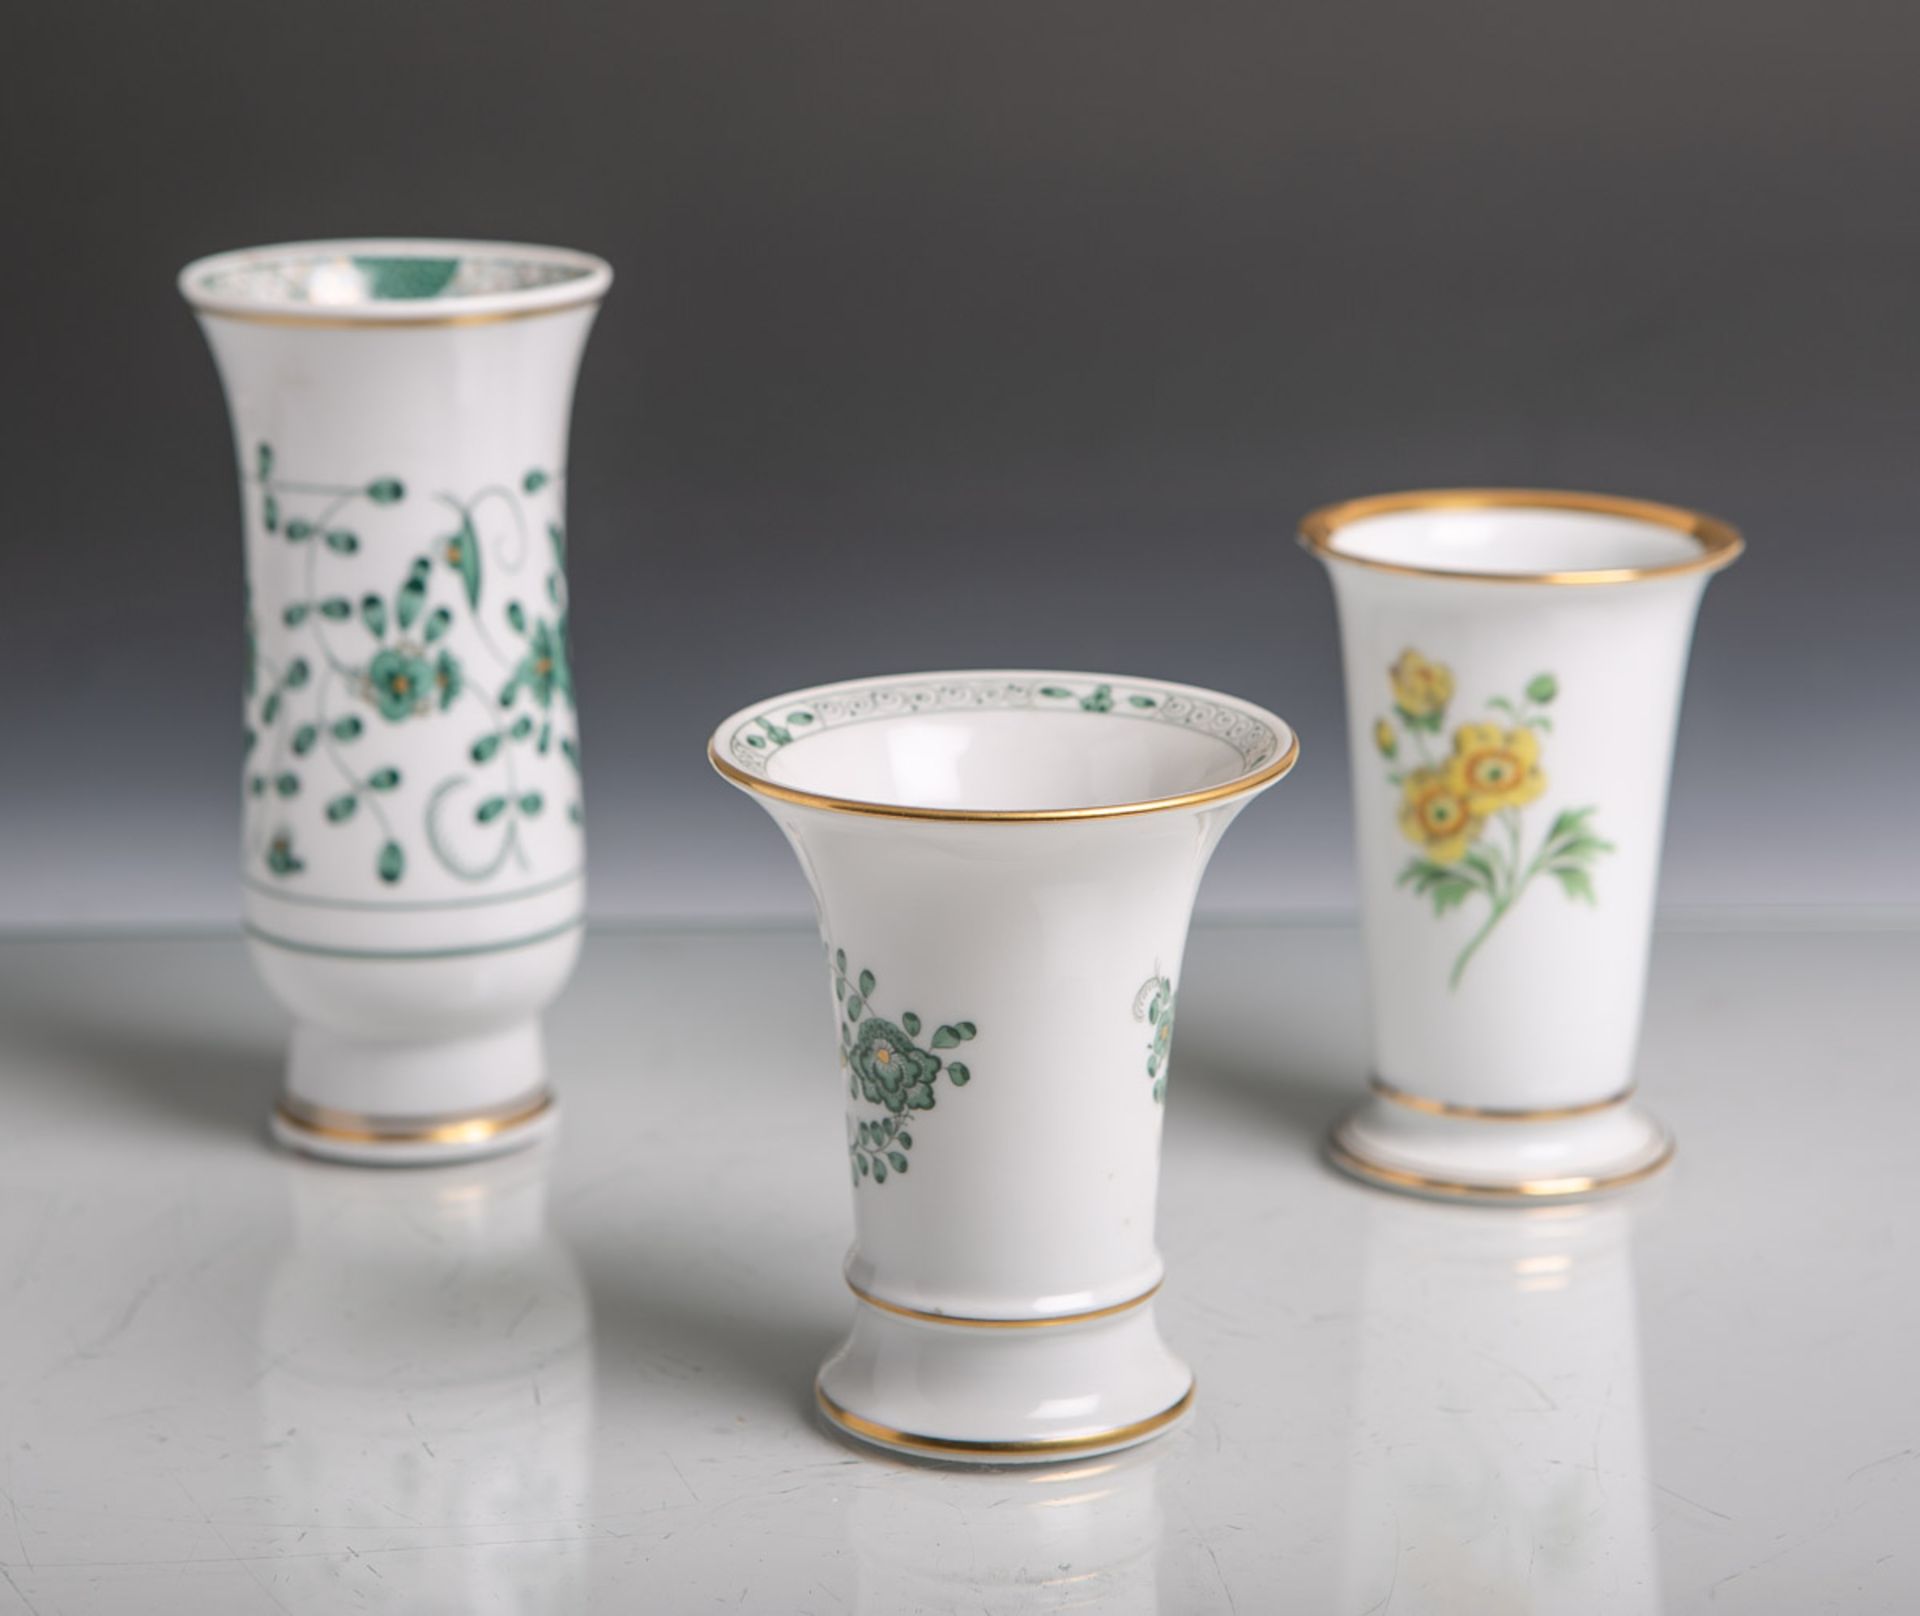 Drei verschiedene kleine Porzellanvasen von Meissen (diverse Zeiten und versch. Dekore),